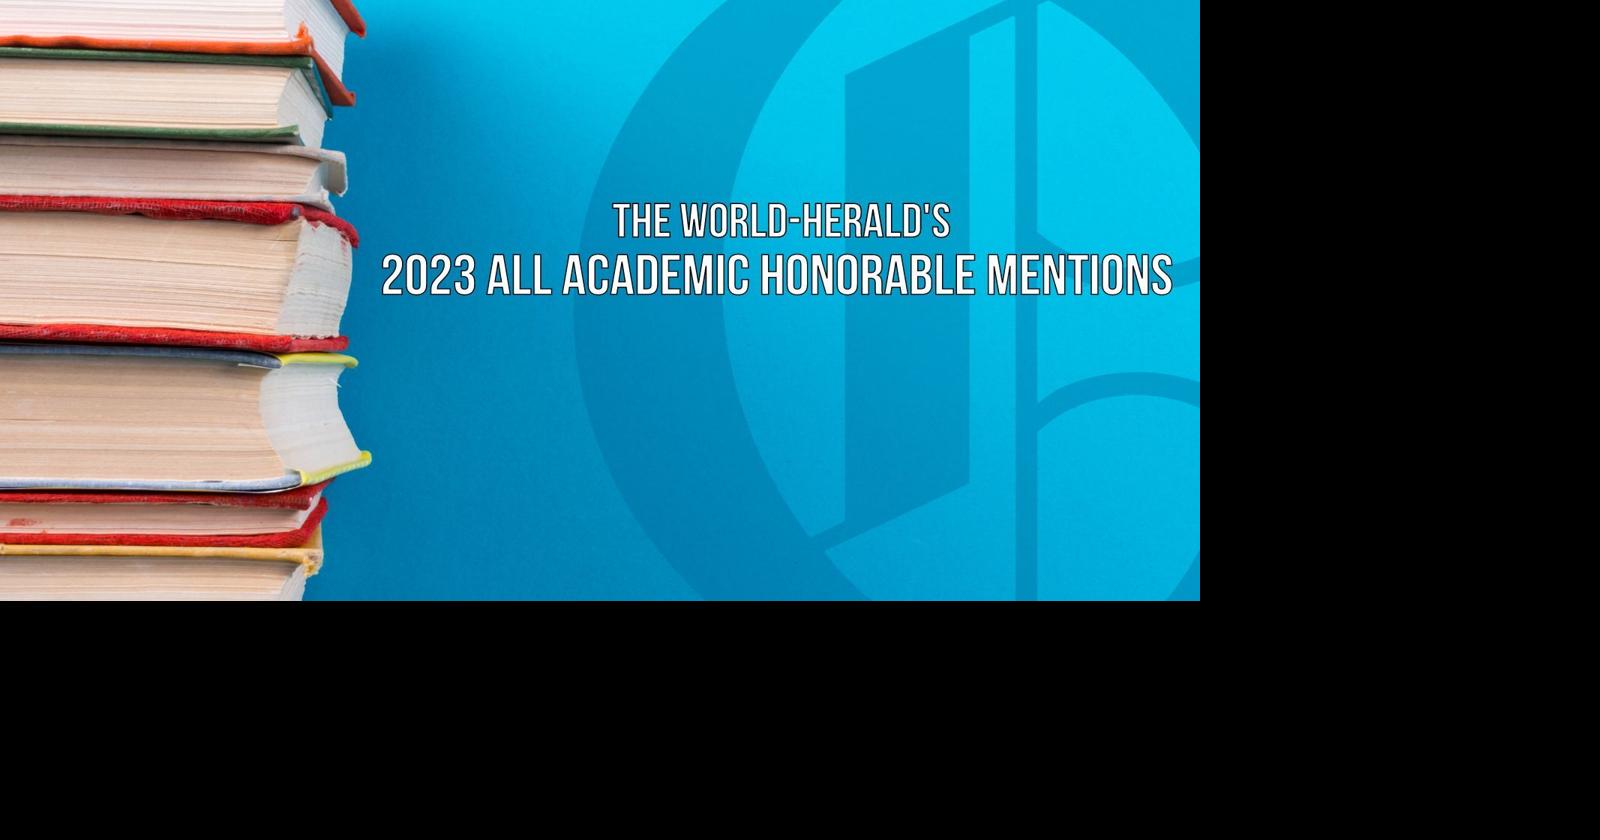 570 Nebraska high school seniors earn 2023 All Academic honorable mention